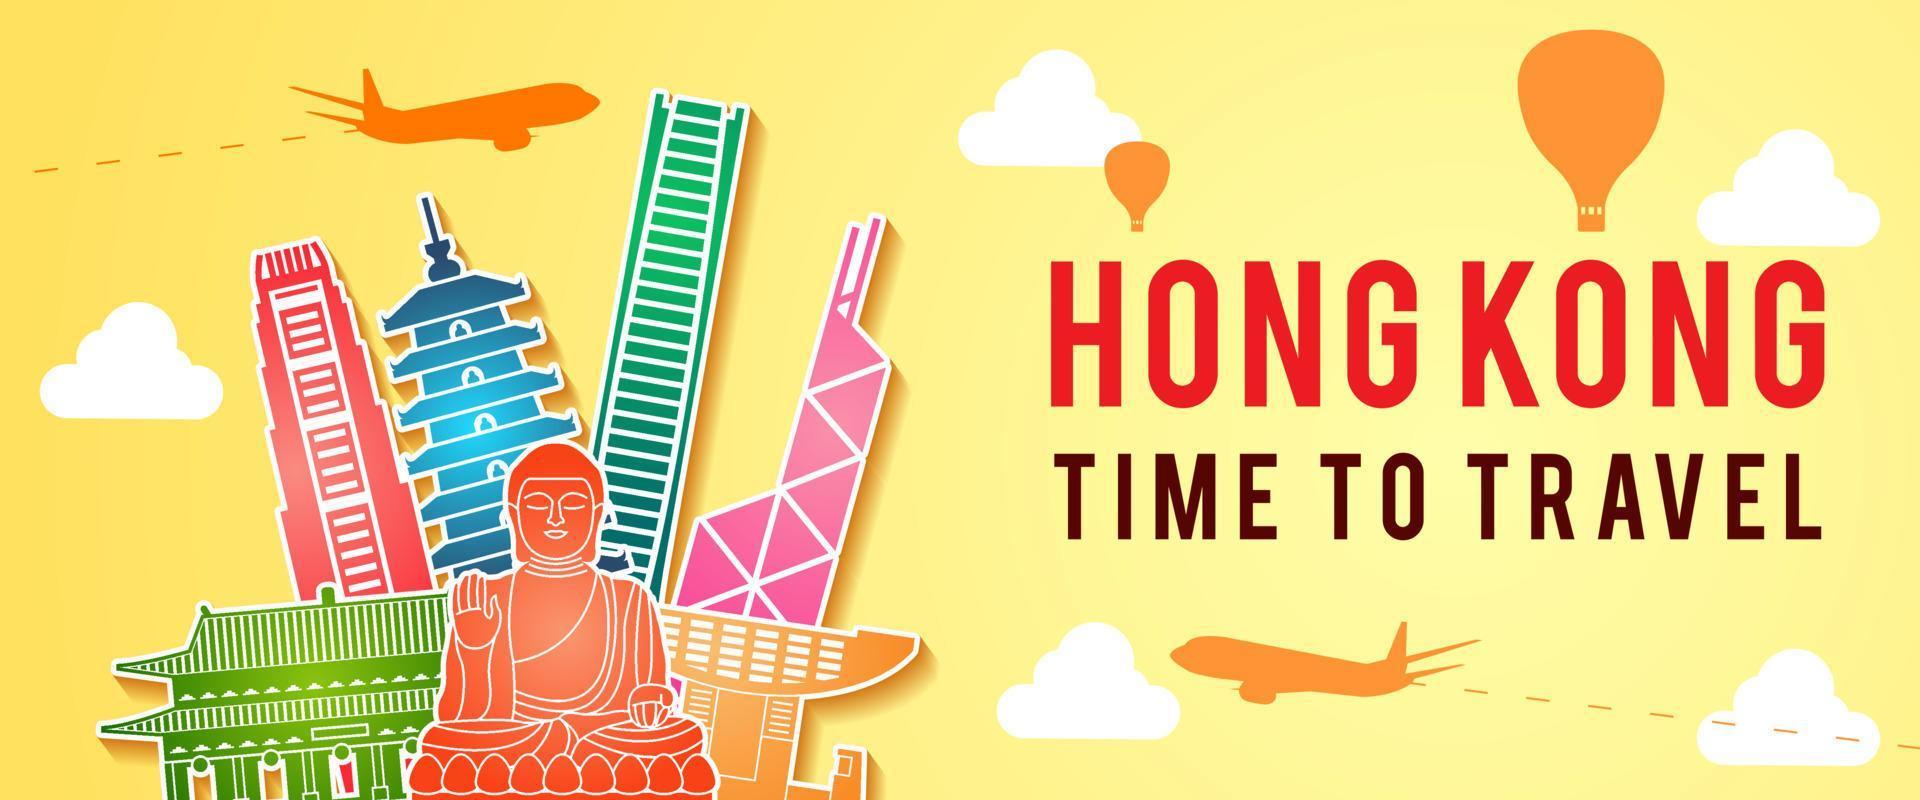 banner de estilo colorido da silhueta do famoso ponto de referência de hong kong vetor